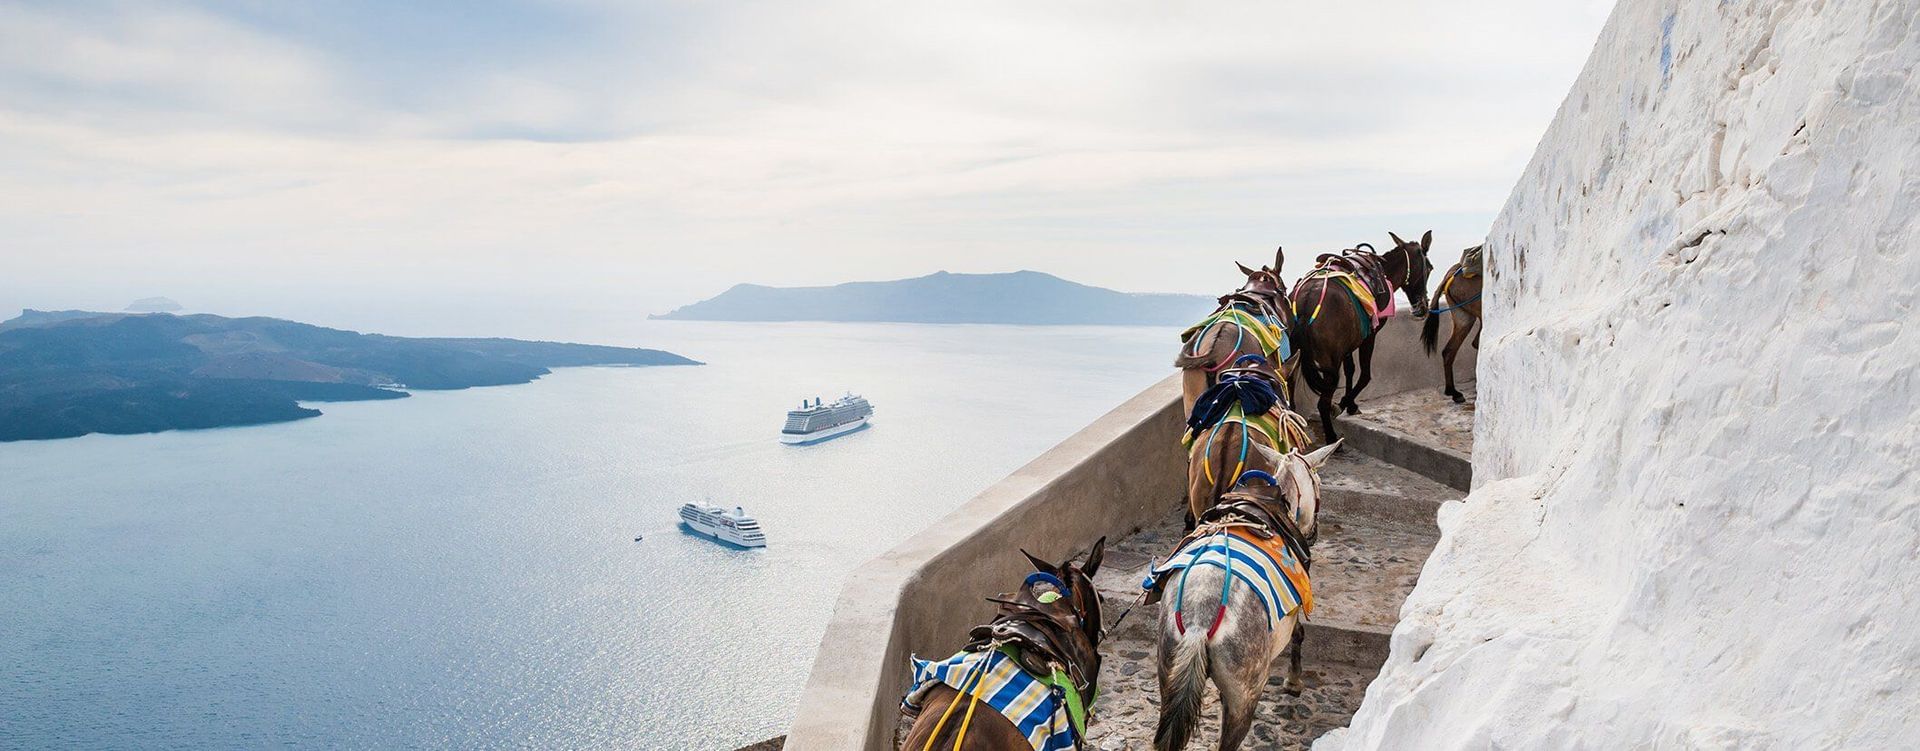 best greek island cruise 2023